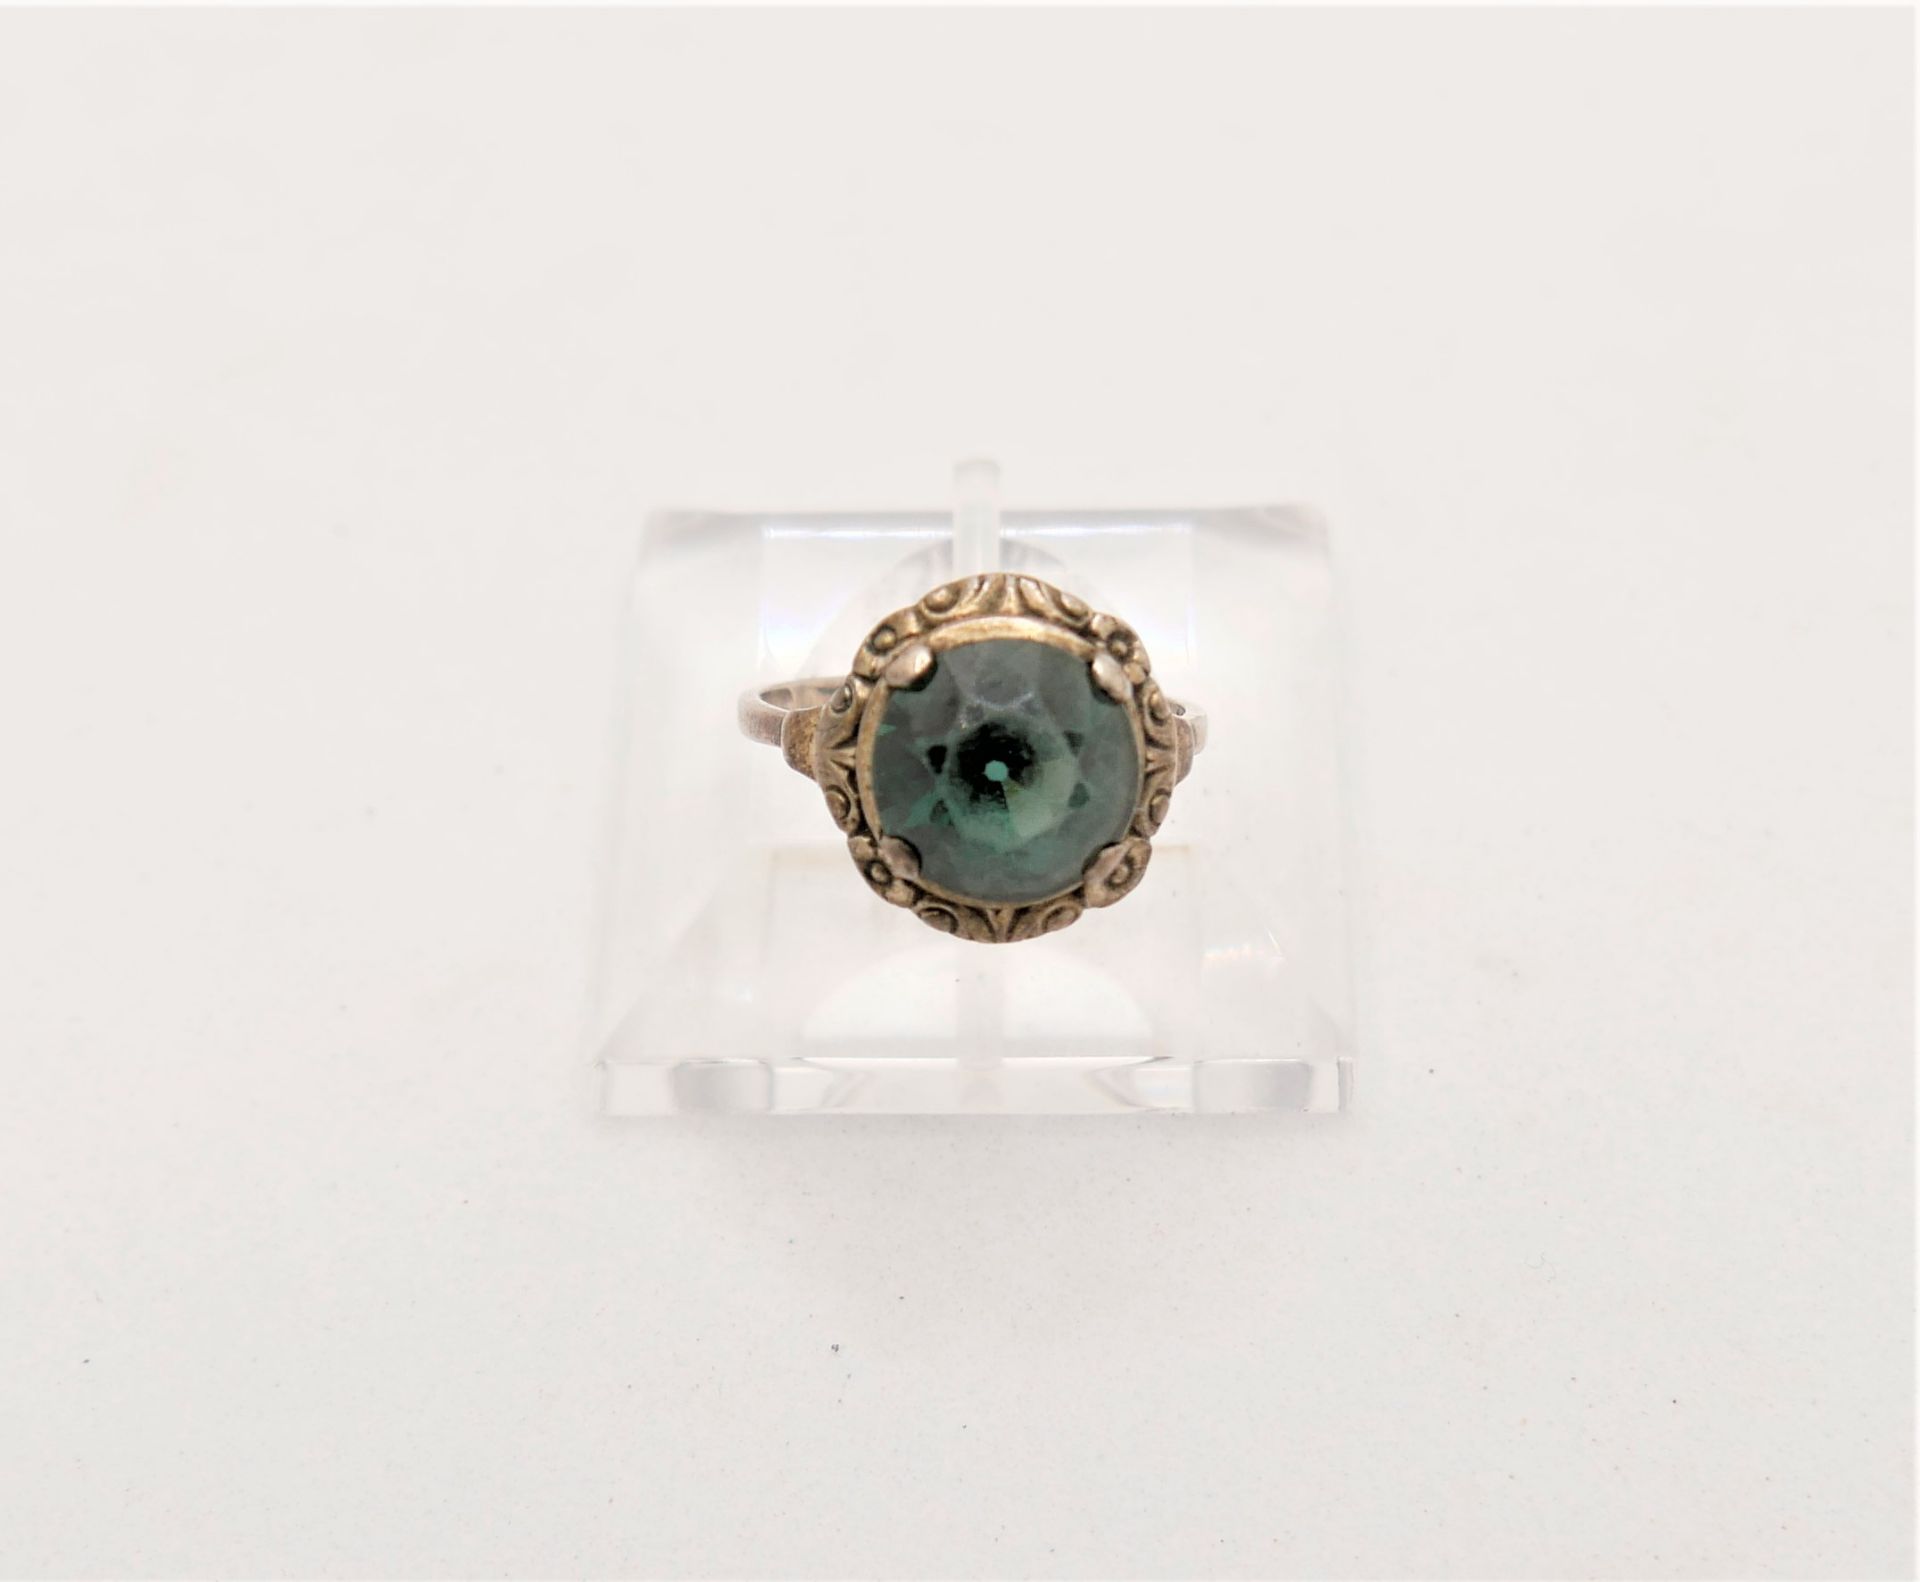 Jugendstil Ring, 835er Silber, besetzt mit grünem Glasstein. Ringgröße 55